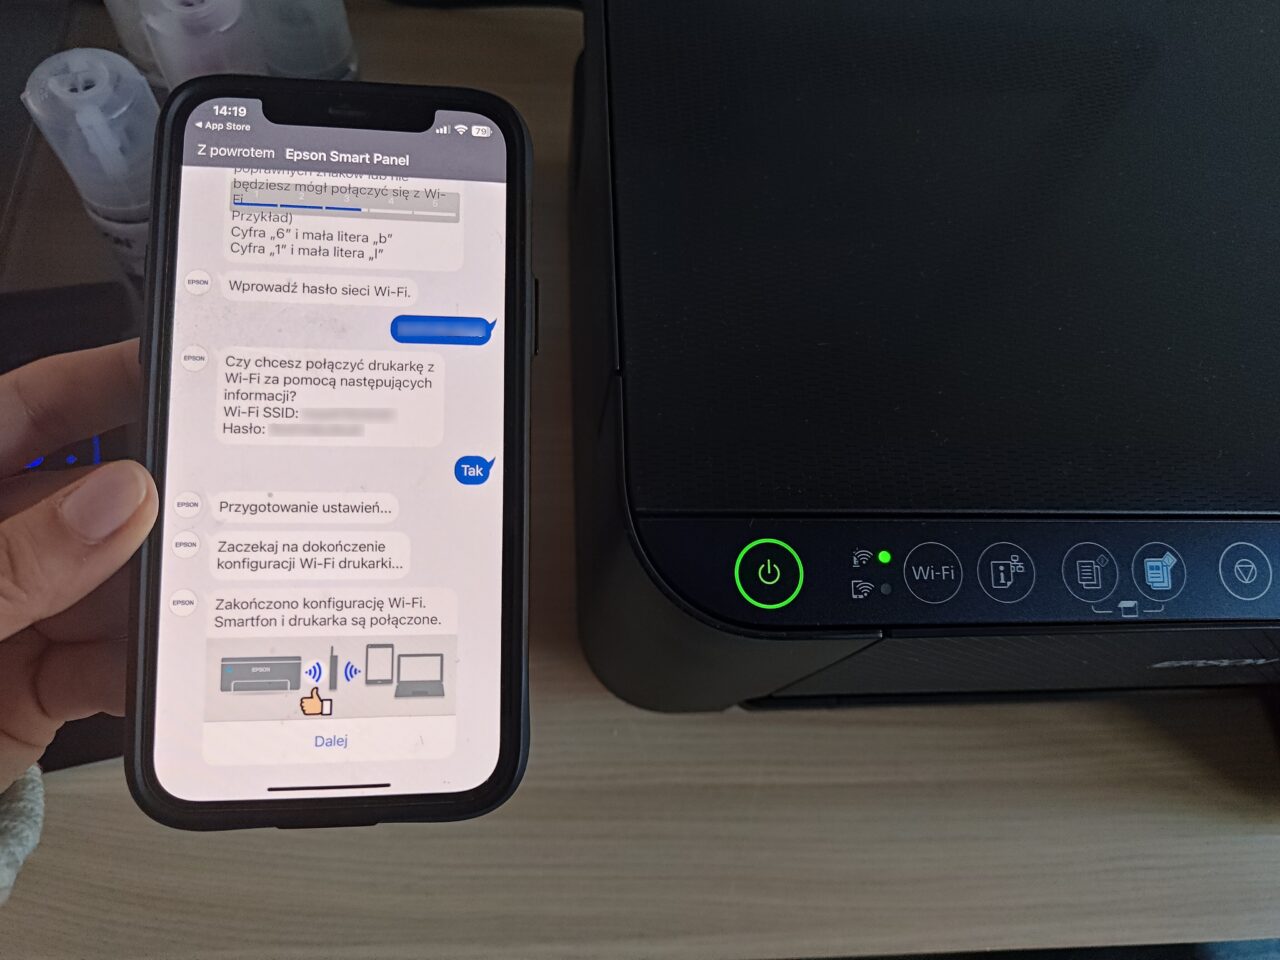 Dłoń trzymająca smartfon z otwartą aplikacją Epson Smart Panel obok drukarki z włączonym zielonym wskaźnikiem zasilania. Na ekranie smartfona proces konfiguracji Wi-Fi drukarki oraz wpisane hasło do sieci, częściowo zakryte niebieskim paskiem.